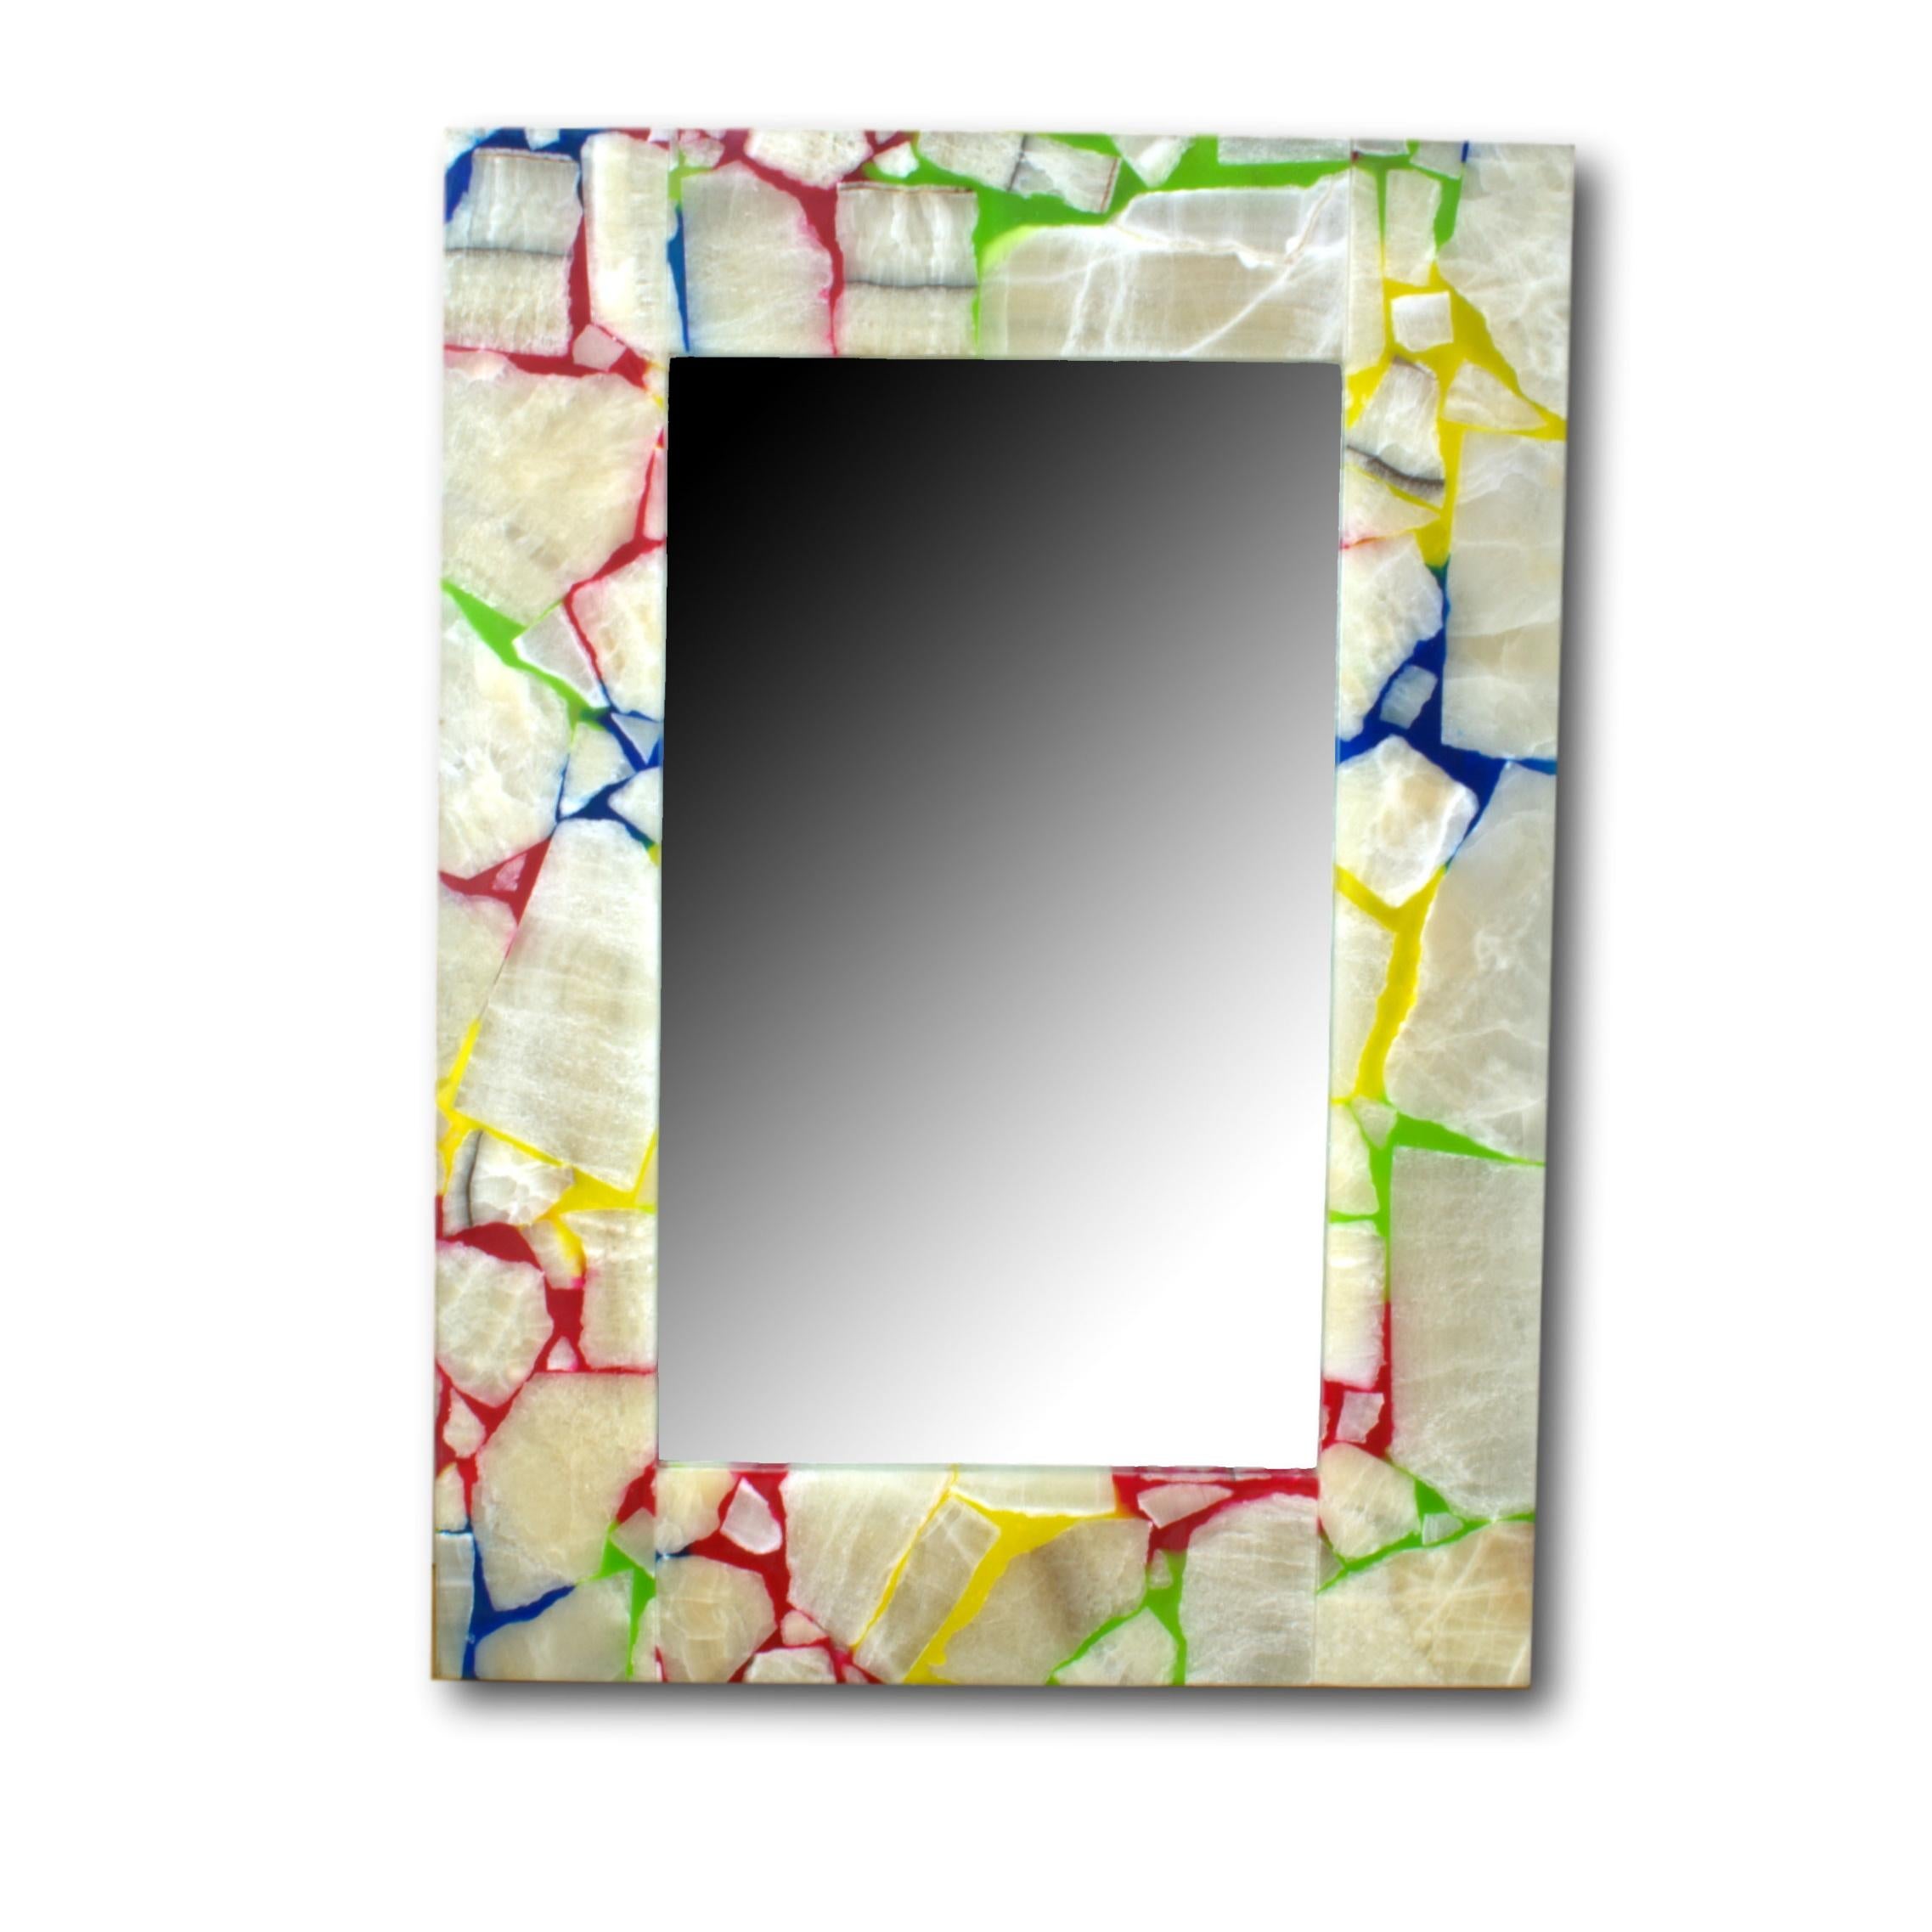 Miroir rectangulaire avec cadre épais en onyx.